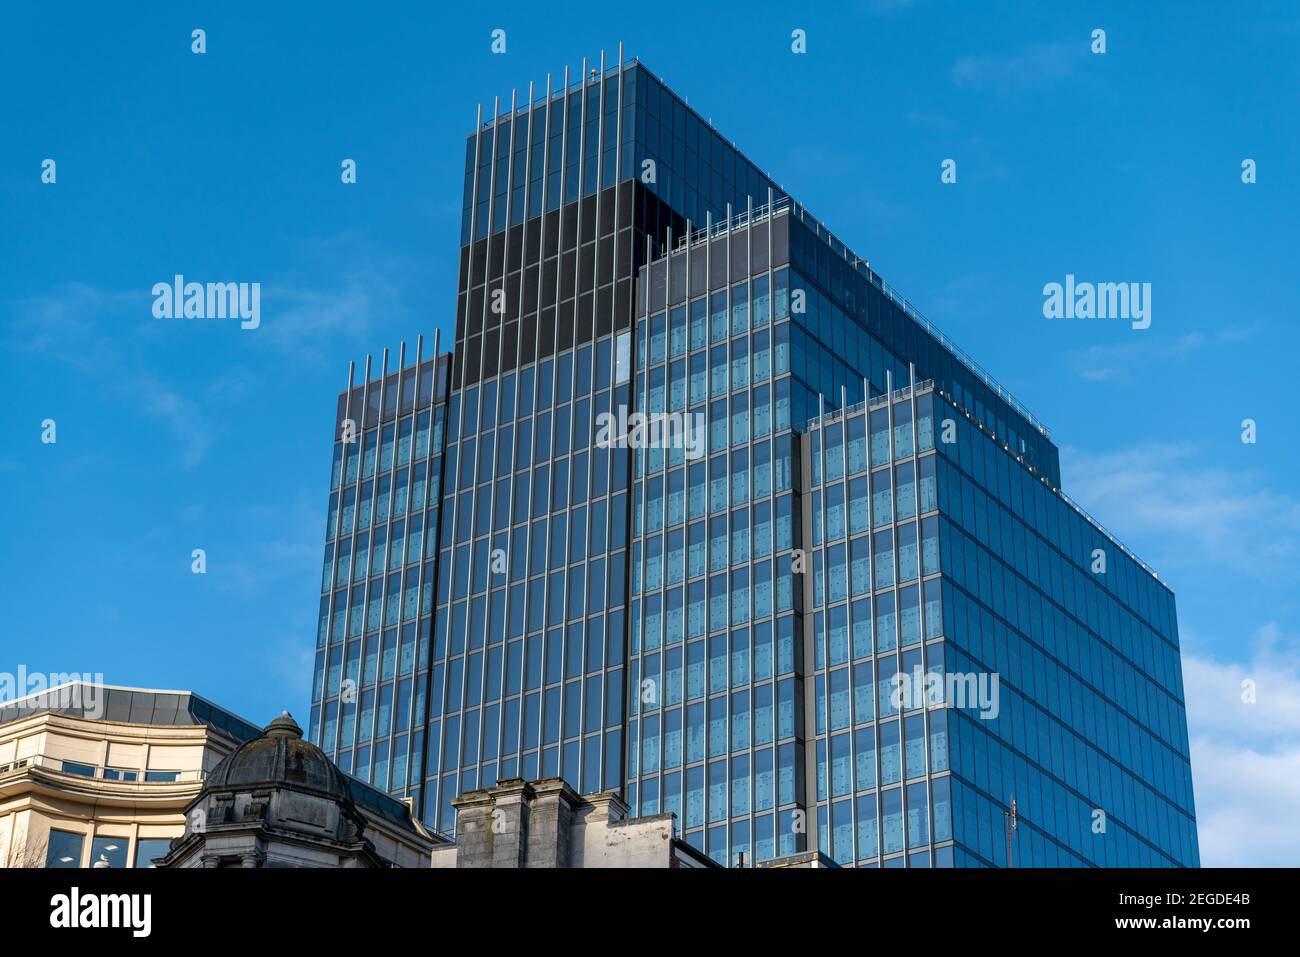 Modernes, neues, blaues Bürogebäude in vier Teilen, hinter einem frischen blauen Himmel. Himmelblaues Gebäude, Birmingham, West Midlands, Großbritannien. Stockfoto